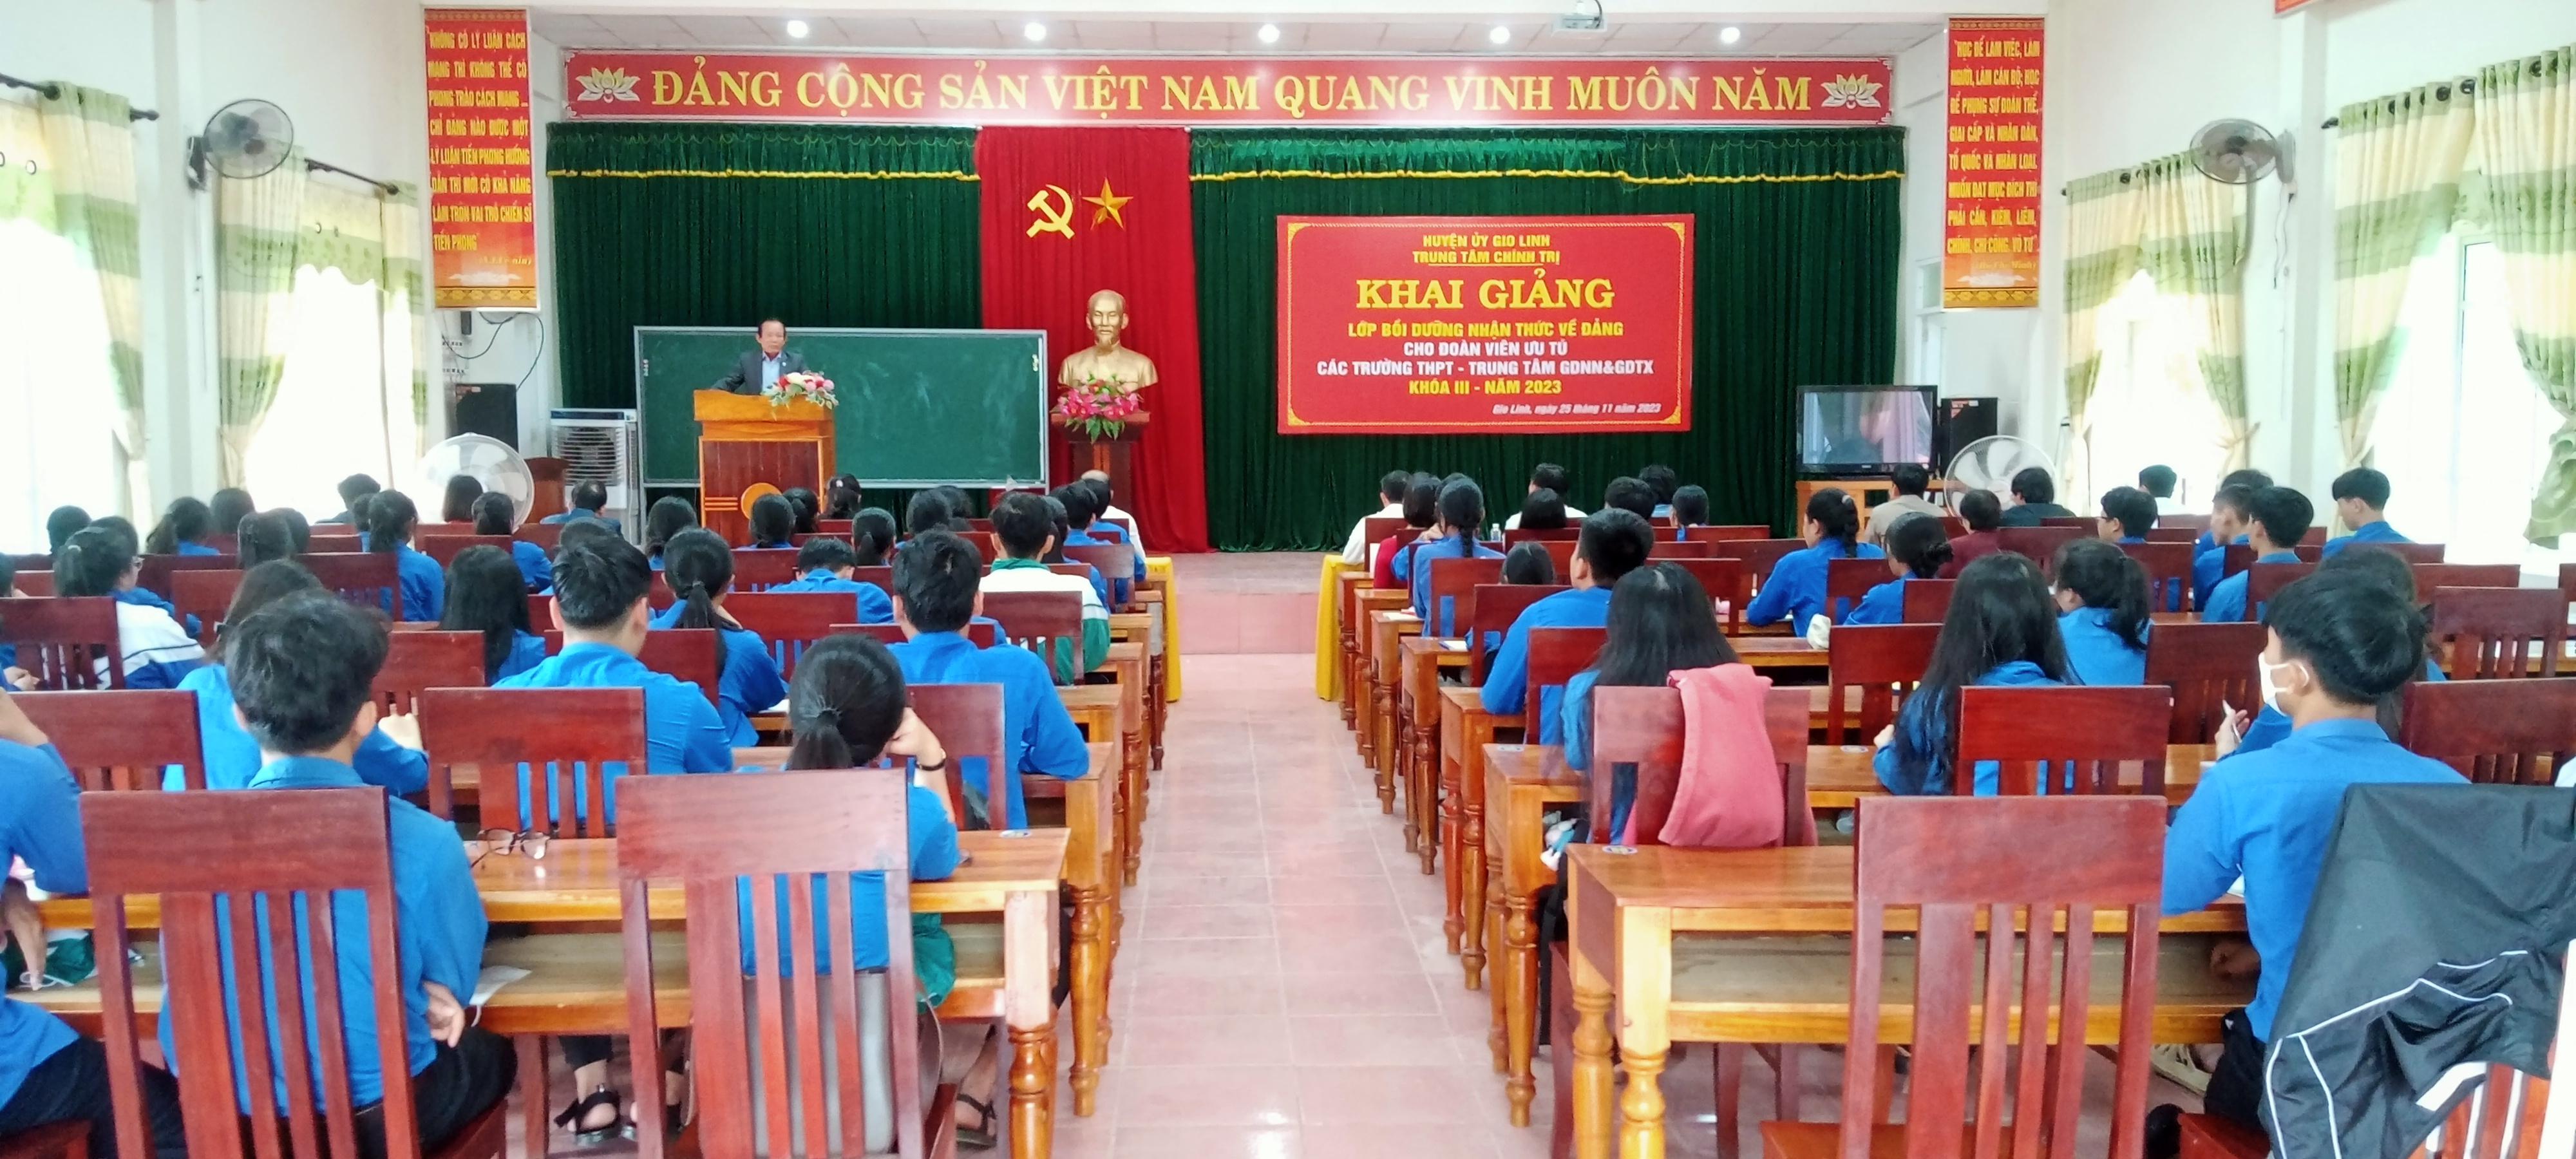 Trung tâm chính trị huyện Gio Linh khai giảng lớp bồi dưỡng nhận thức về Đảng cho học sinh THPT 